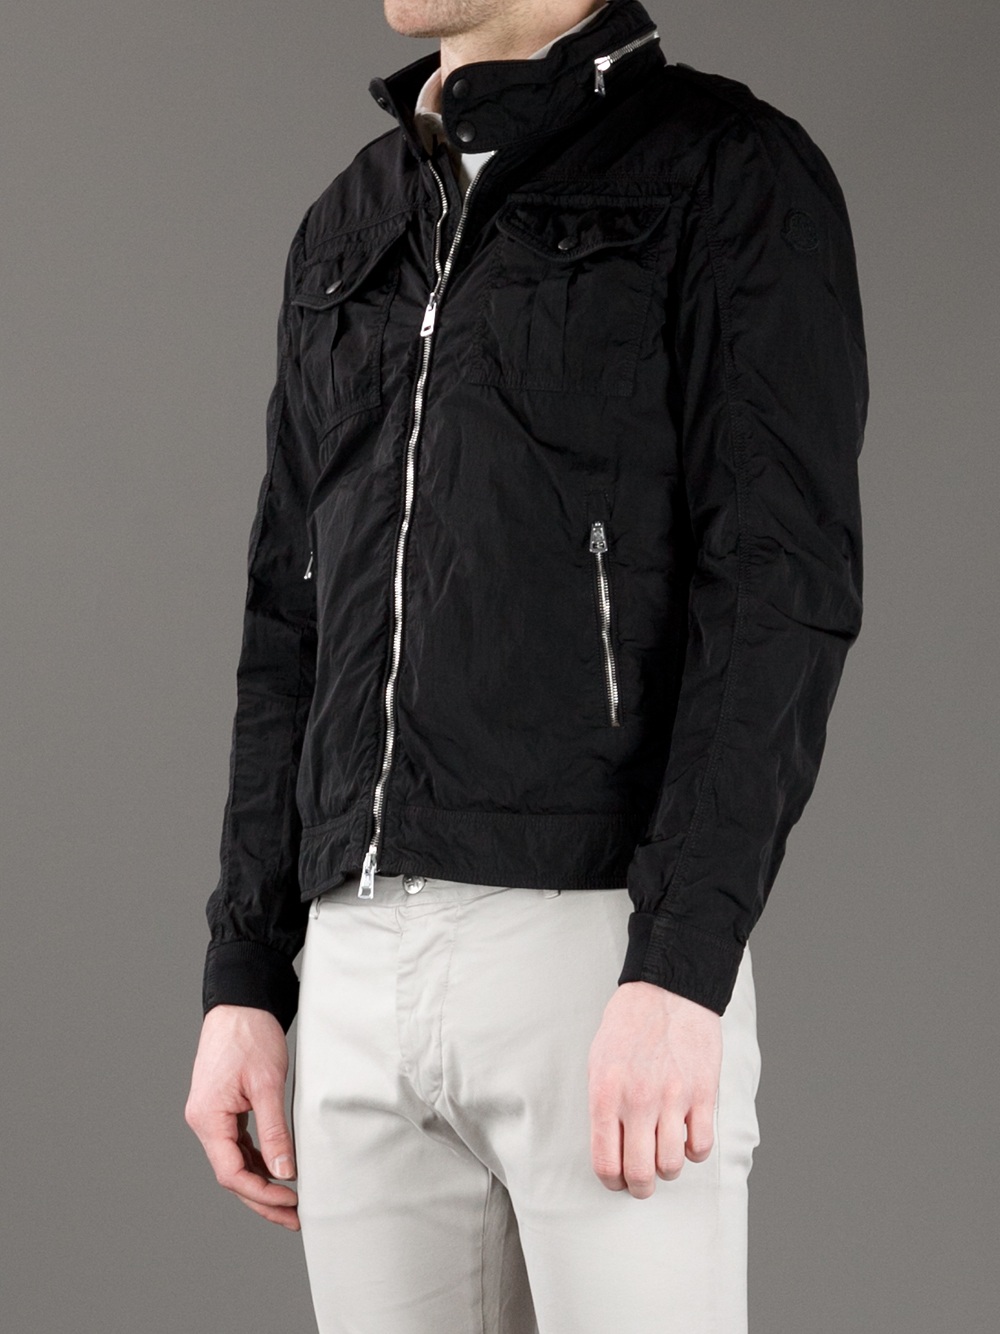 moncler harrington jacket